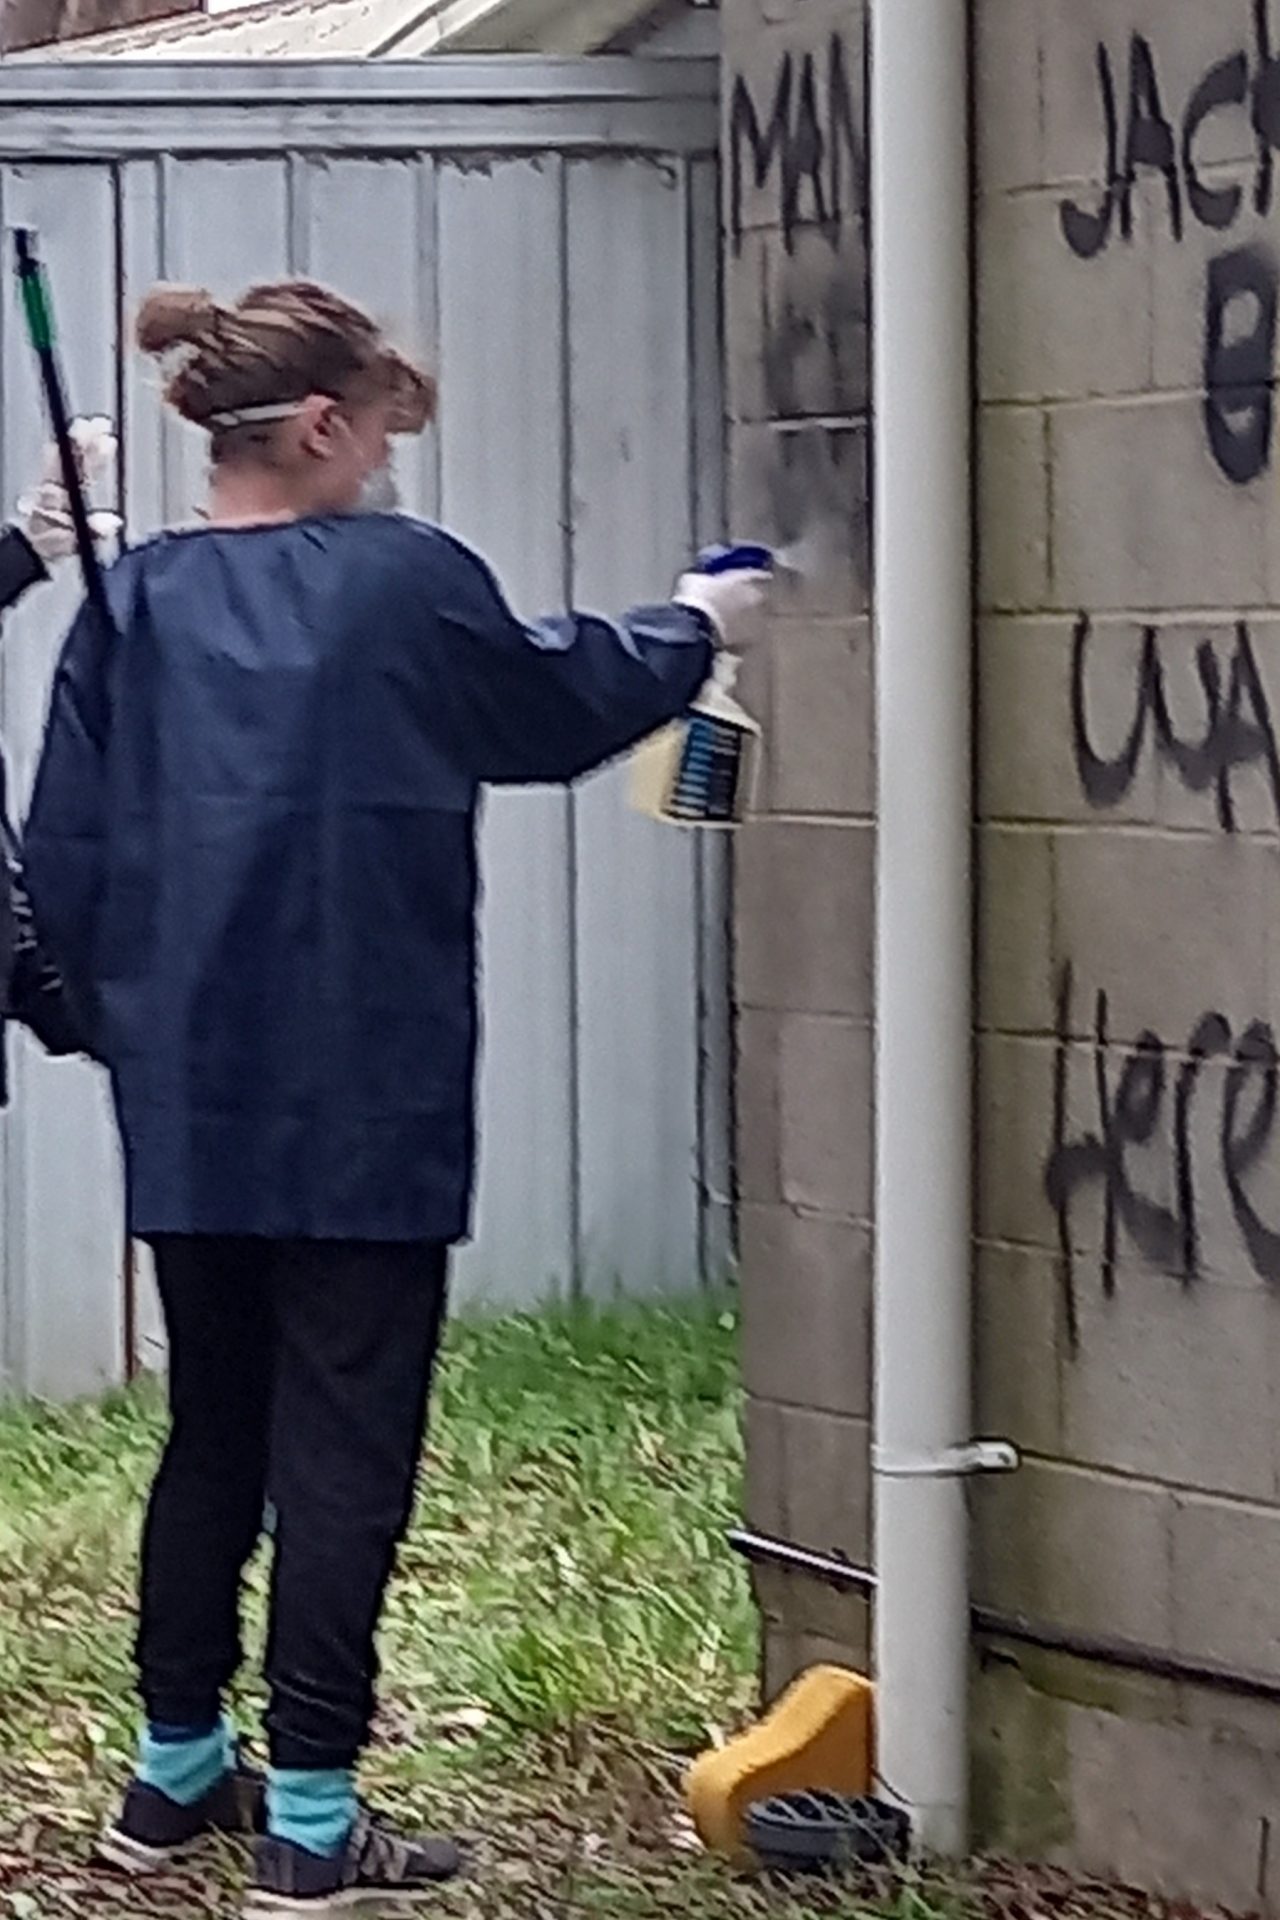 11th Ballarat Guides Clean Graffiti (7)